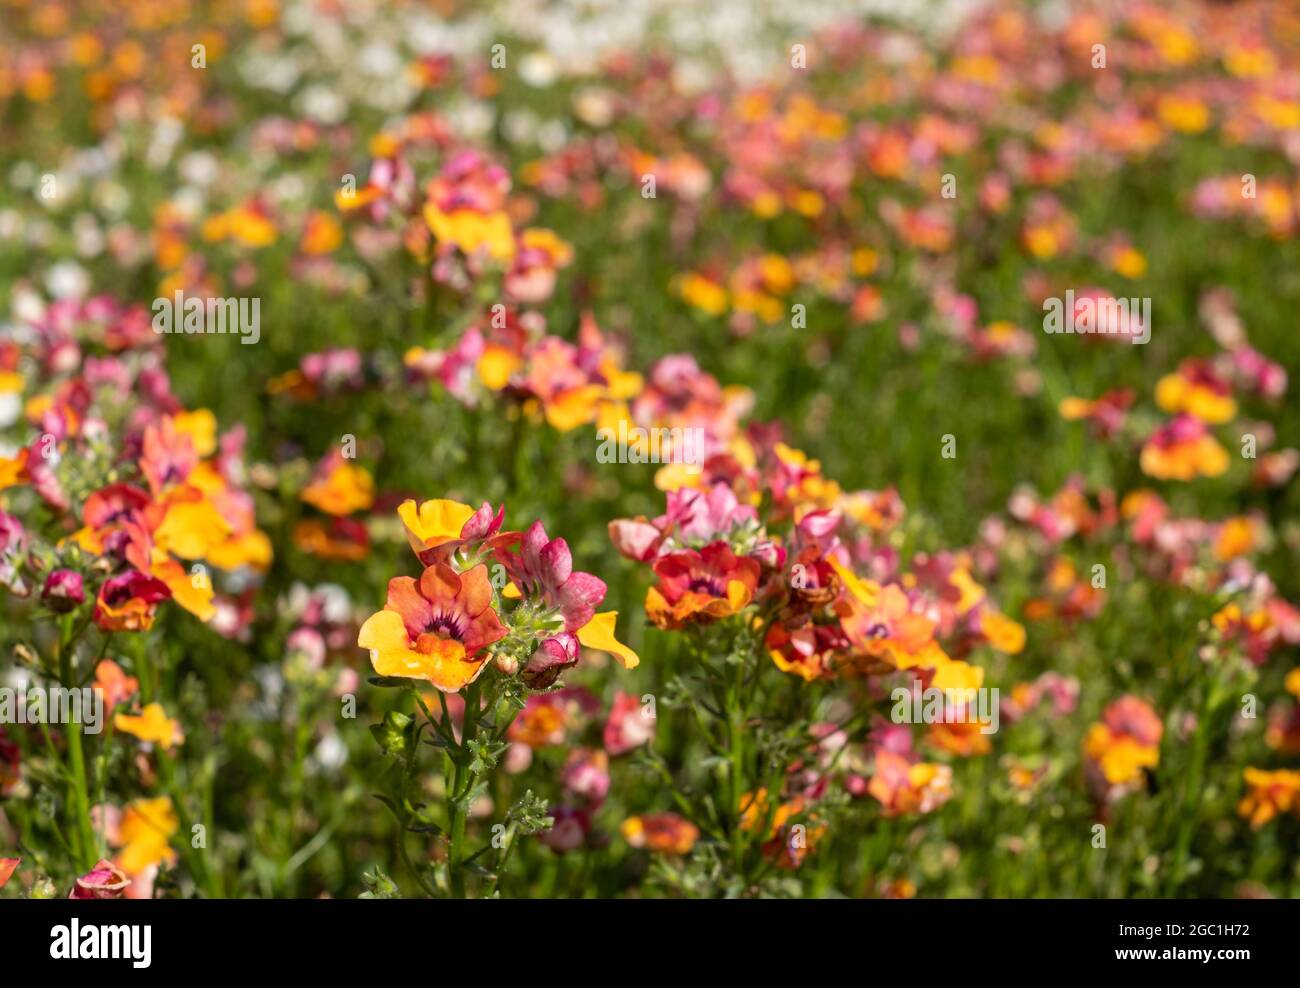 Farbenfrohe, rosa und gelbfärbige Nemesienblüten, niedrig wachsende einjährige Pflanzen mit bunten Blütenblättern. Stockfoto